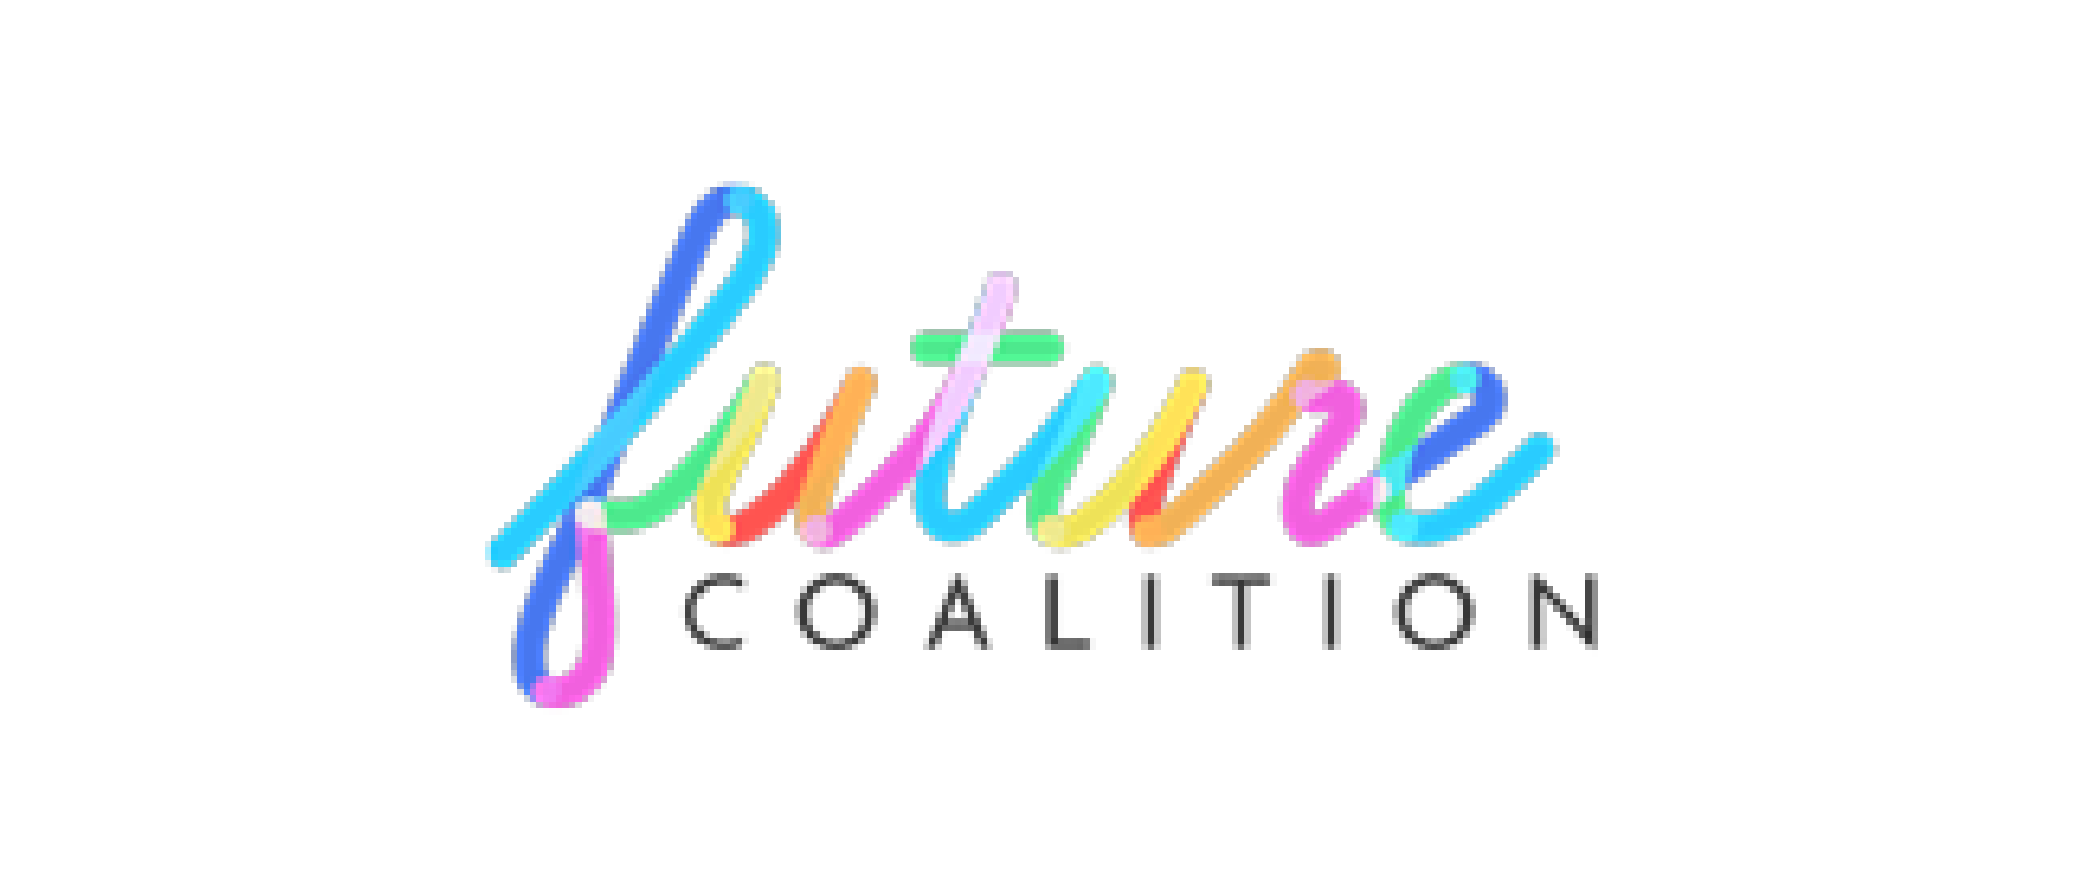 Future Coalition